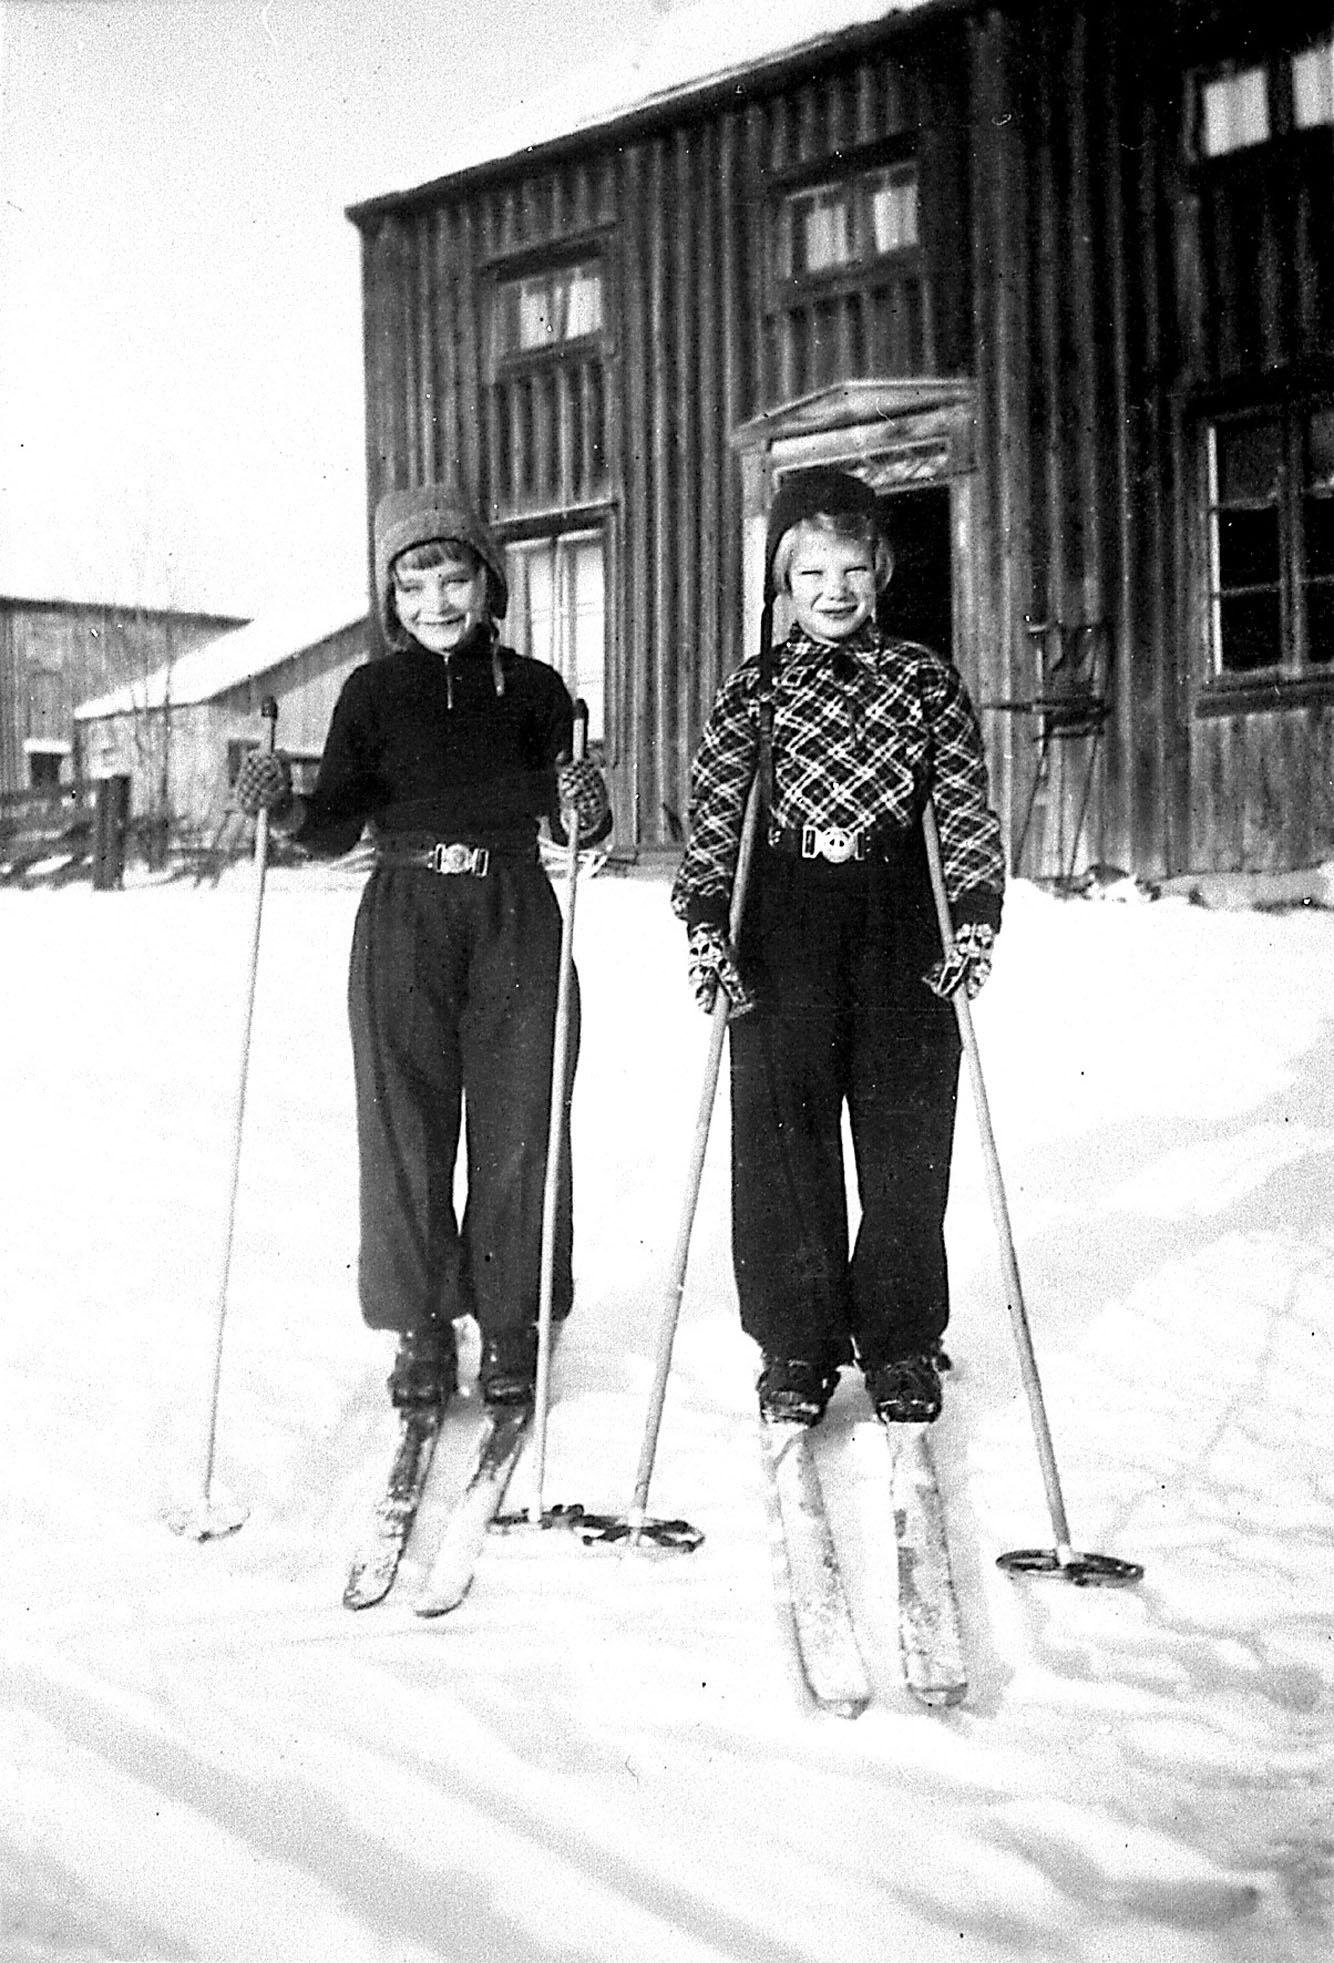 Systrarna Kaarina och Pirkko Lomakka från Häämenlinna. De bodde hos Hambergs och Westlunds i Viksäter. Pirkko återvände till Finland, Kaarina blev kvar och gifte sig i &Ouml;rnsköldsvik.